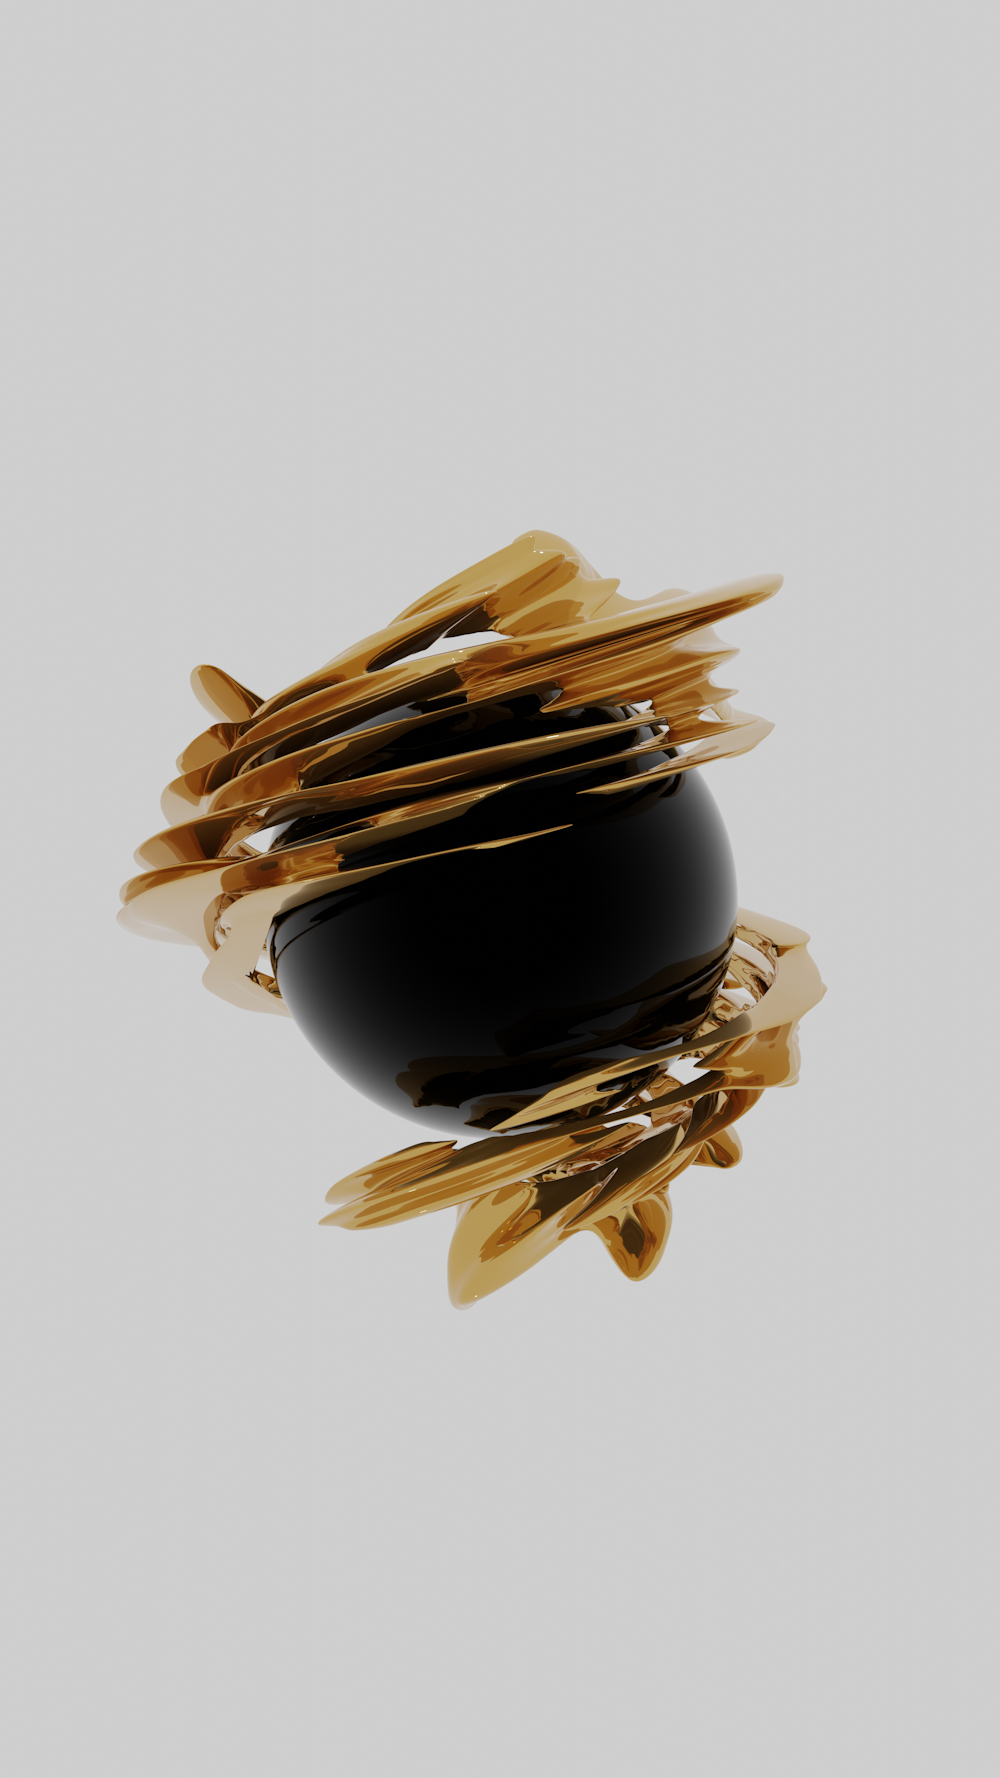 Ein schwarz-goldenes Objekt schwebt in der Luft